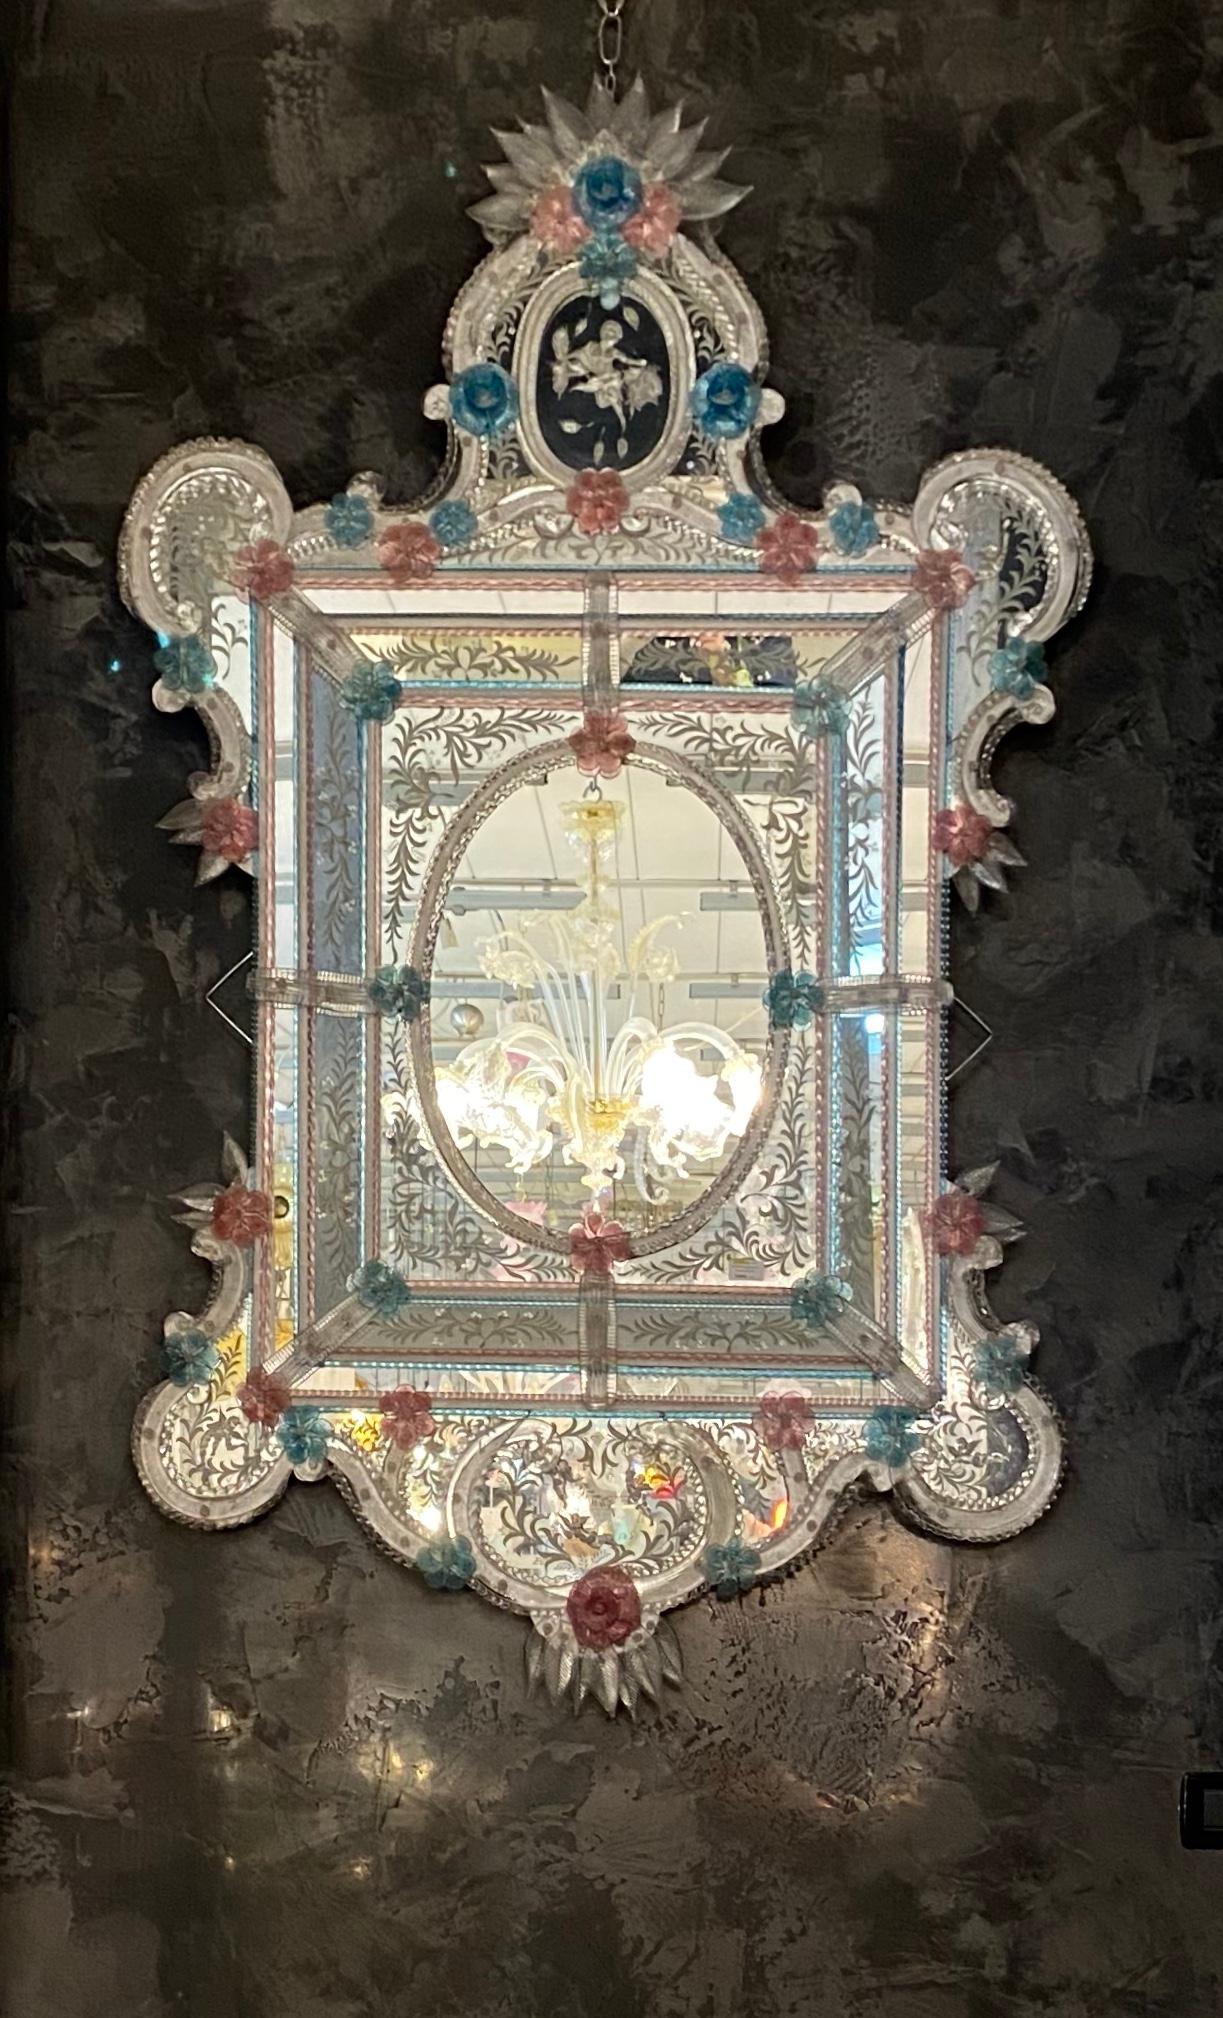 Ce magnifique miroir vénitien présente des motifs floraux gravés qui ornent le cadre du miroir. Le long des bords du cadre se trouvent des accents de corde en verre et de nombreuses fleurs roses et bleues en verre.
Exécuté par le grand maître de